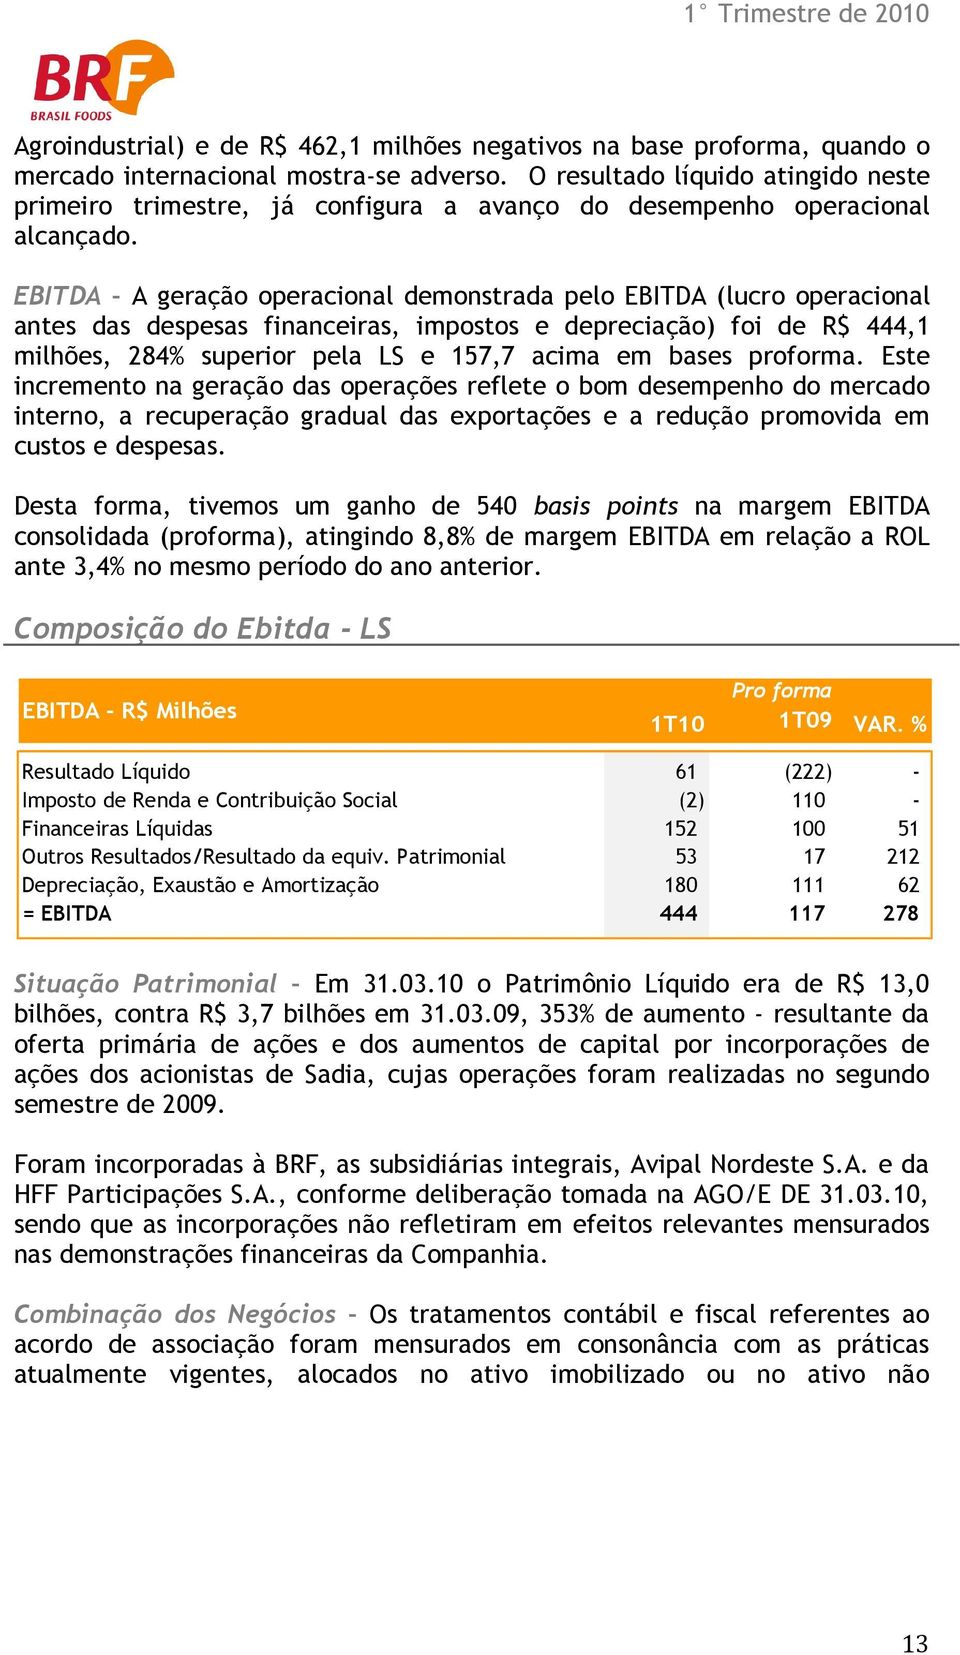 EBITDA A geração operacional demonstrada pelo EBITDA (lucro operacional antes das despesas financeiras, impostos e depreciação) foi de R$ 444,1 milhões, 284% superior pela LS e 157,7 acima em bases